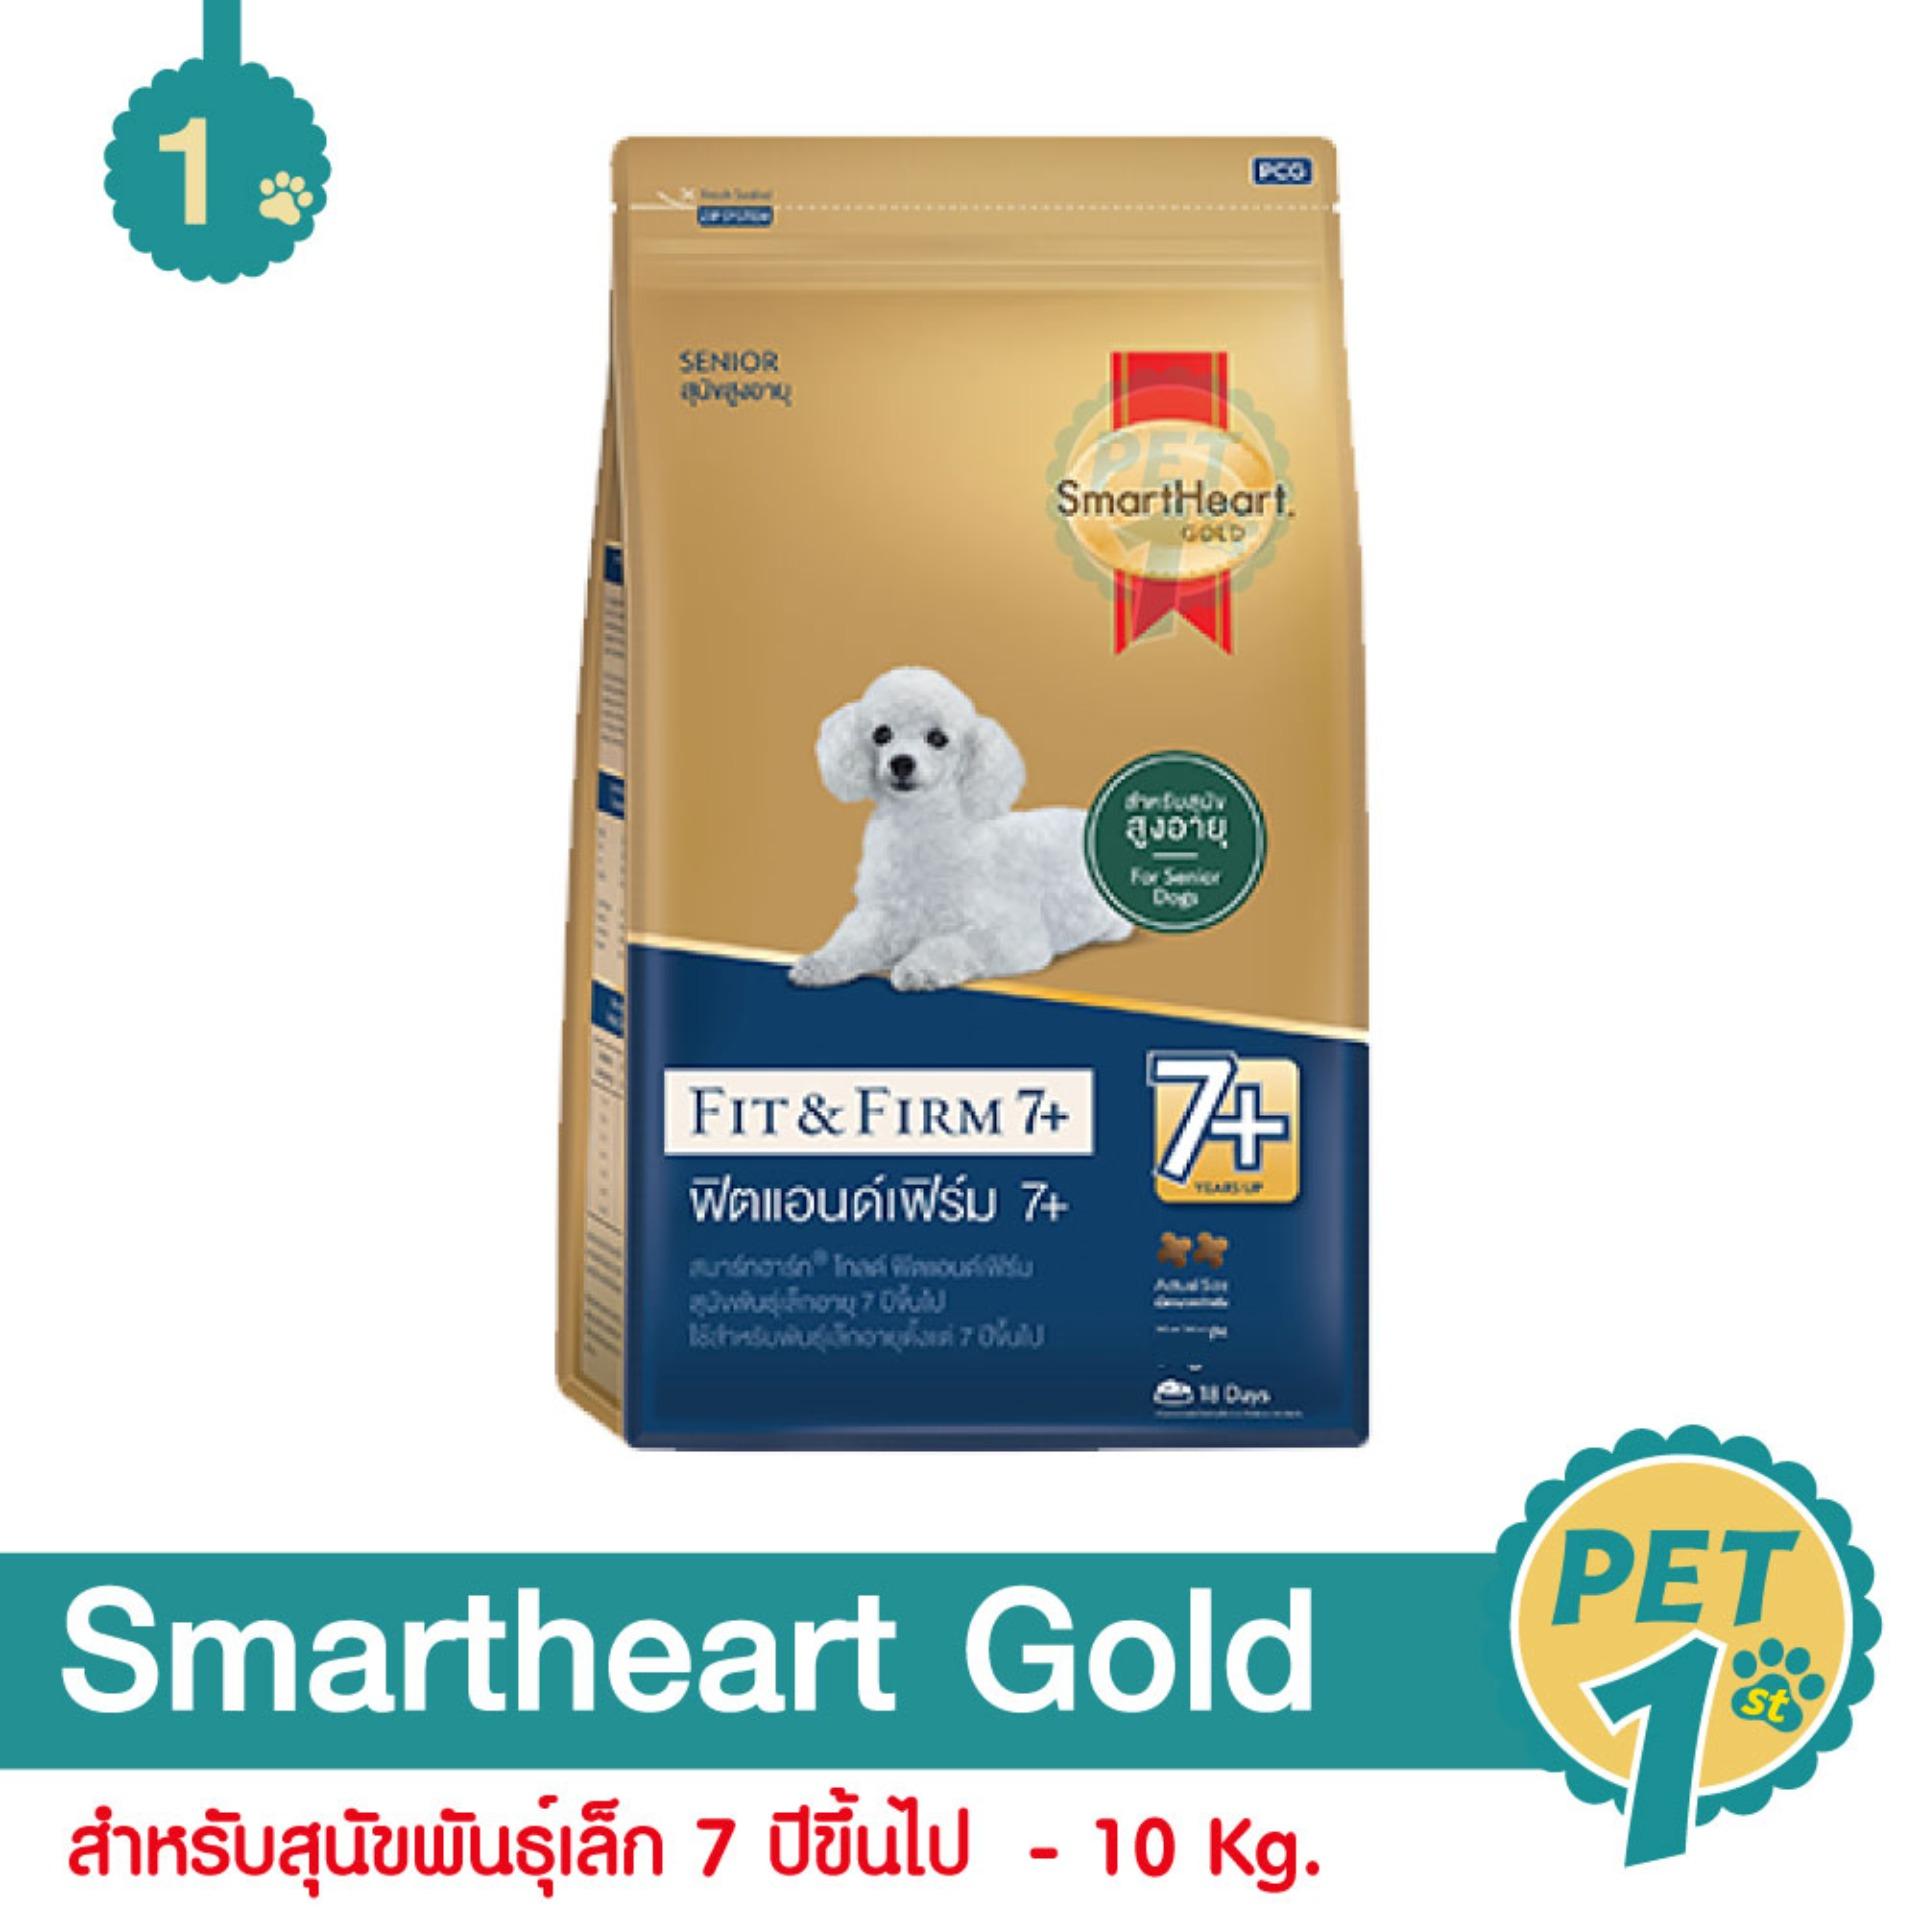 Smartheart Gold Fit and Firm สูตรบำรุงข้อต่อ ควบคุมน้ำหนัก สำหรับสุนัขพันธุ์เล็ก 7 ปีขึ้นไป 10 Kg